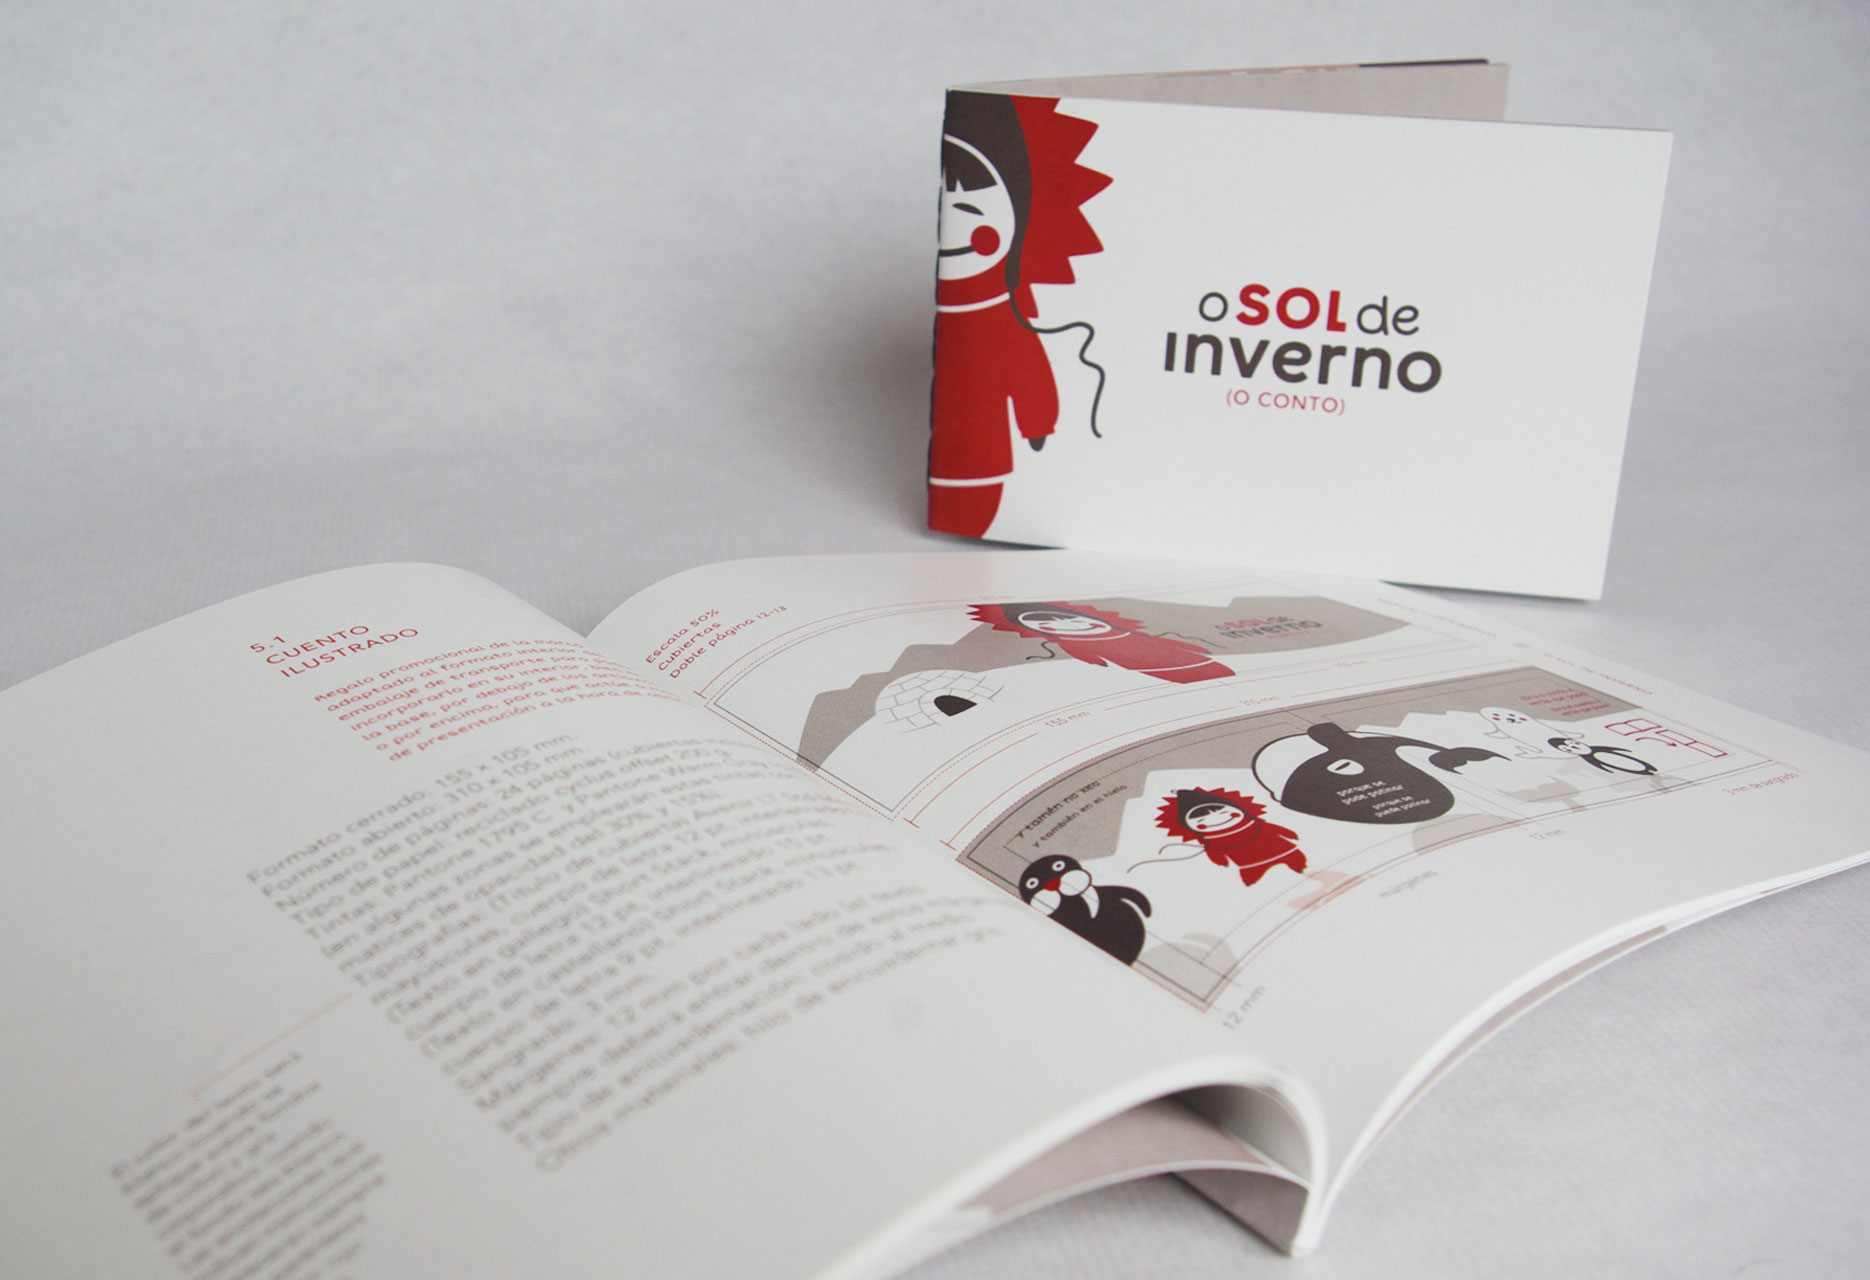 Design child brand O sol de inverno - web design / branding / illustration / packaging